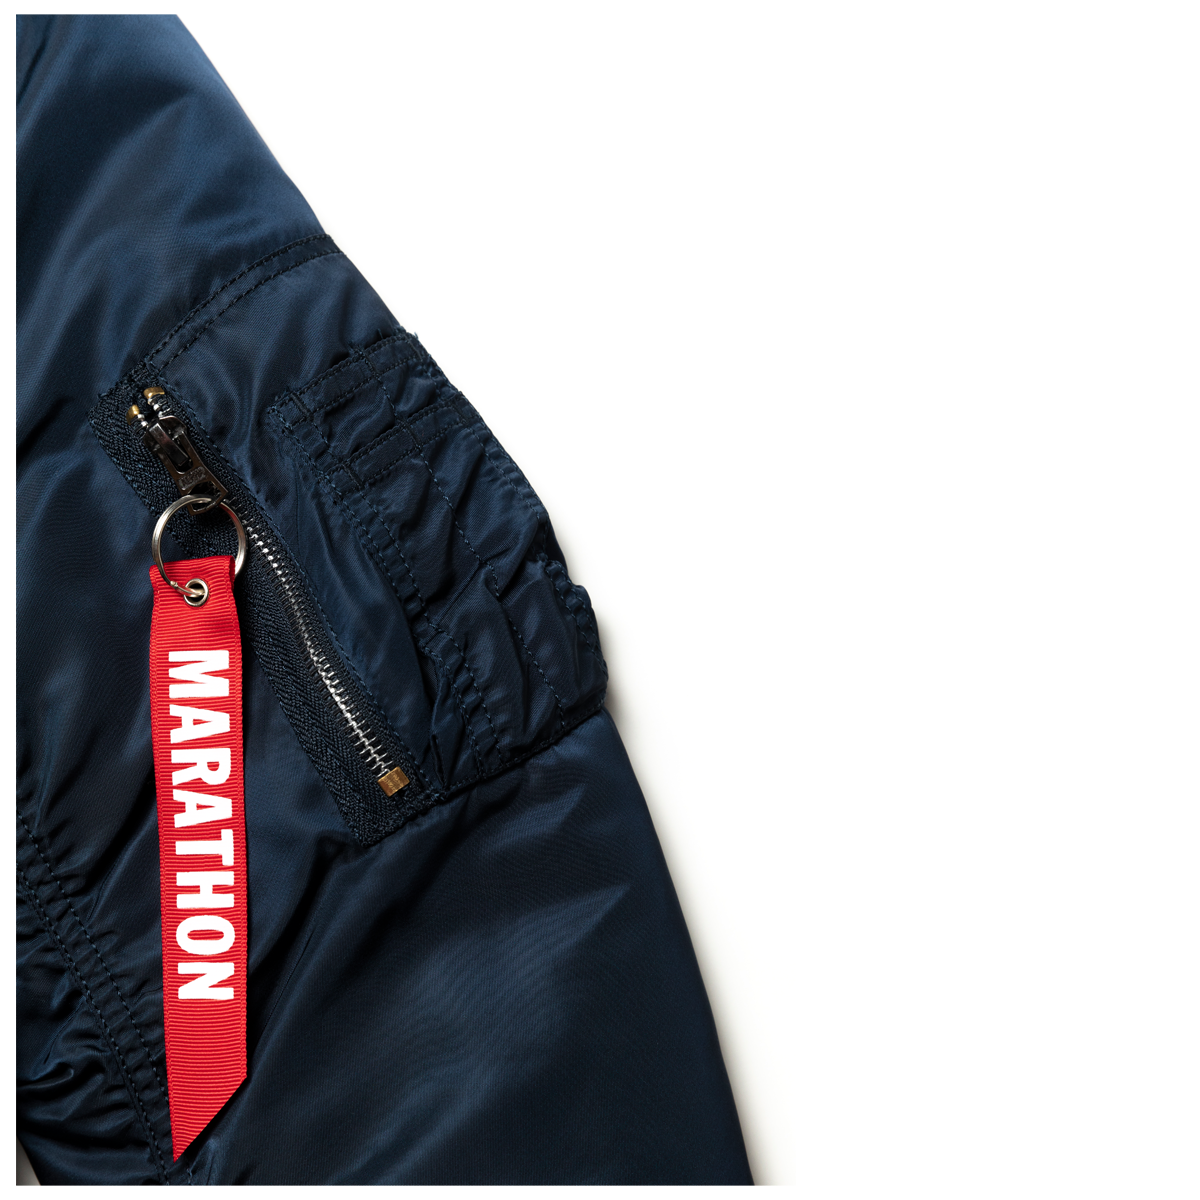 Crenshaw Bomber Jacket - Navy / White- The Marathon Clothing